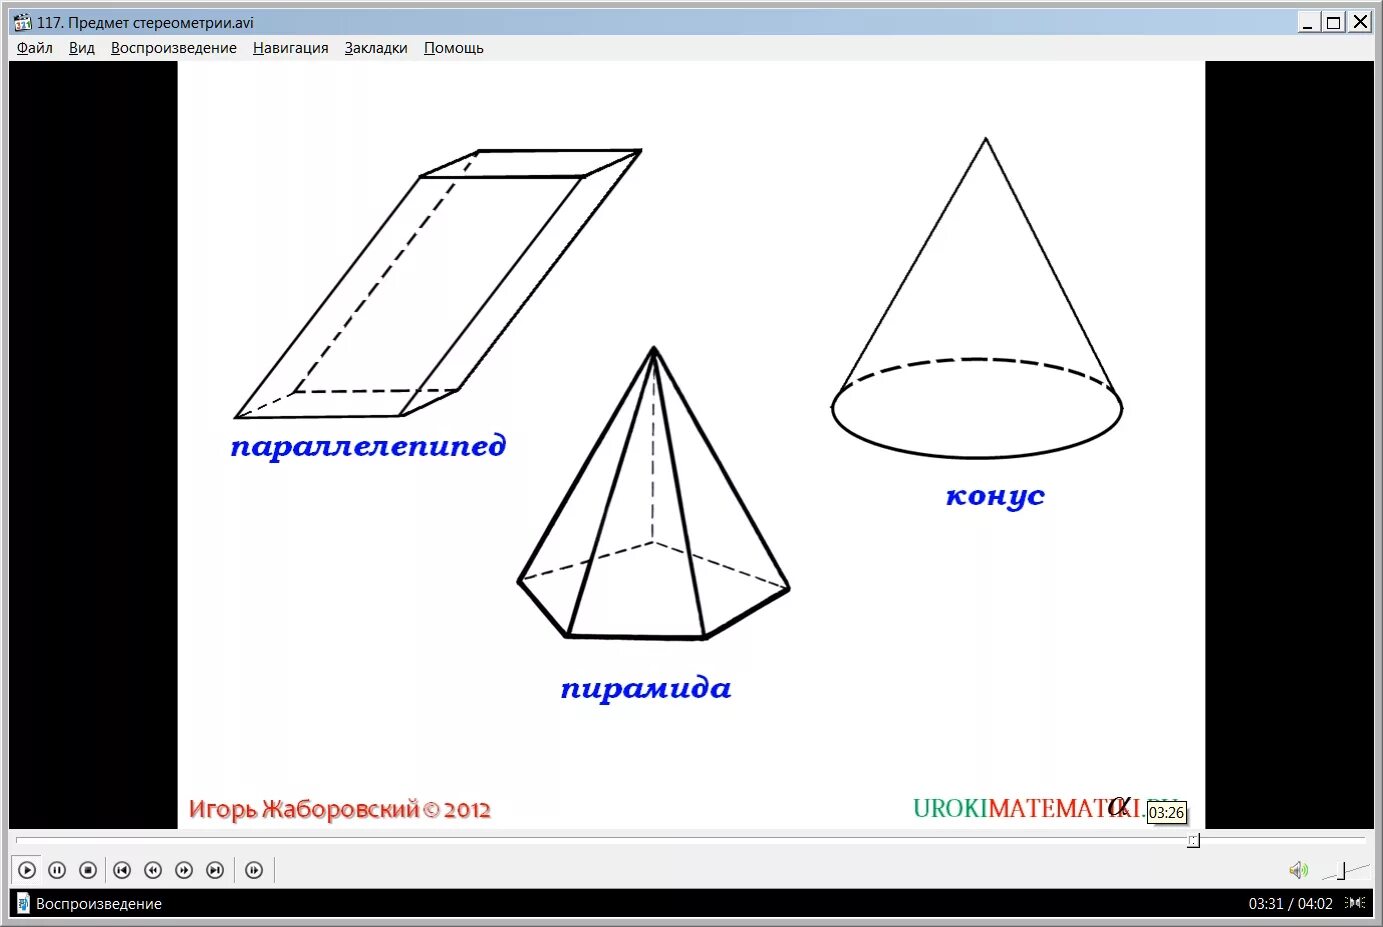 Пирамида призма конус сфера. Предмет стереометрии. Конус фигура. Стереометрия фигуры. Объемные фигуры стереометрия.